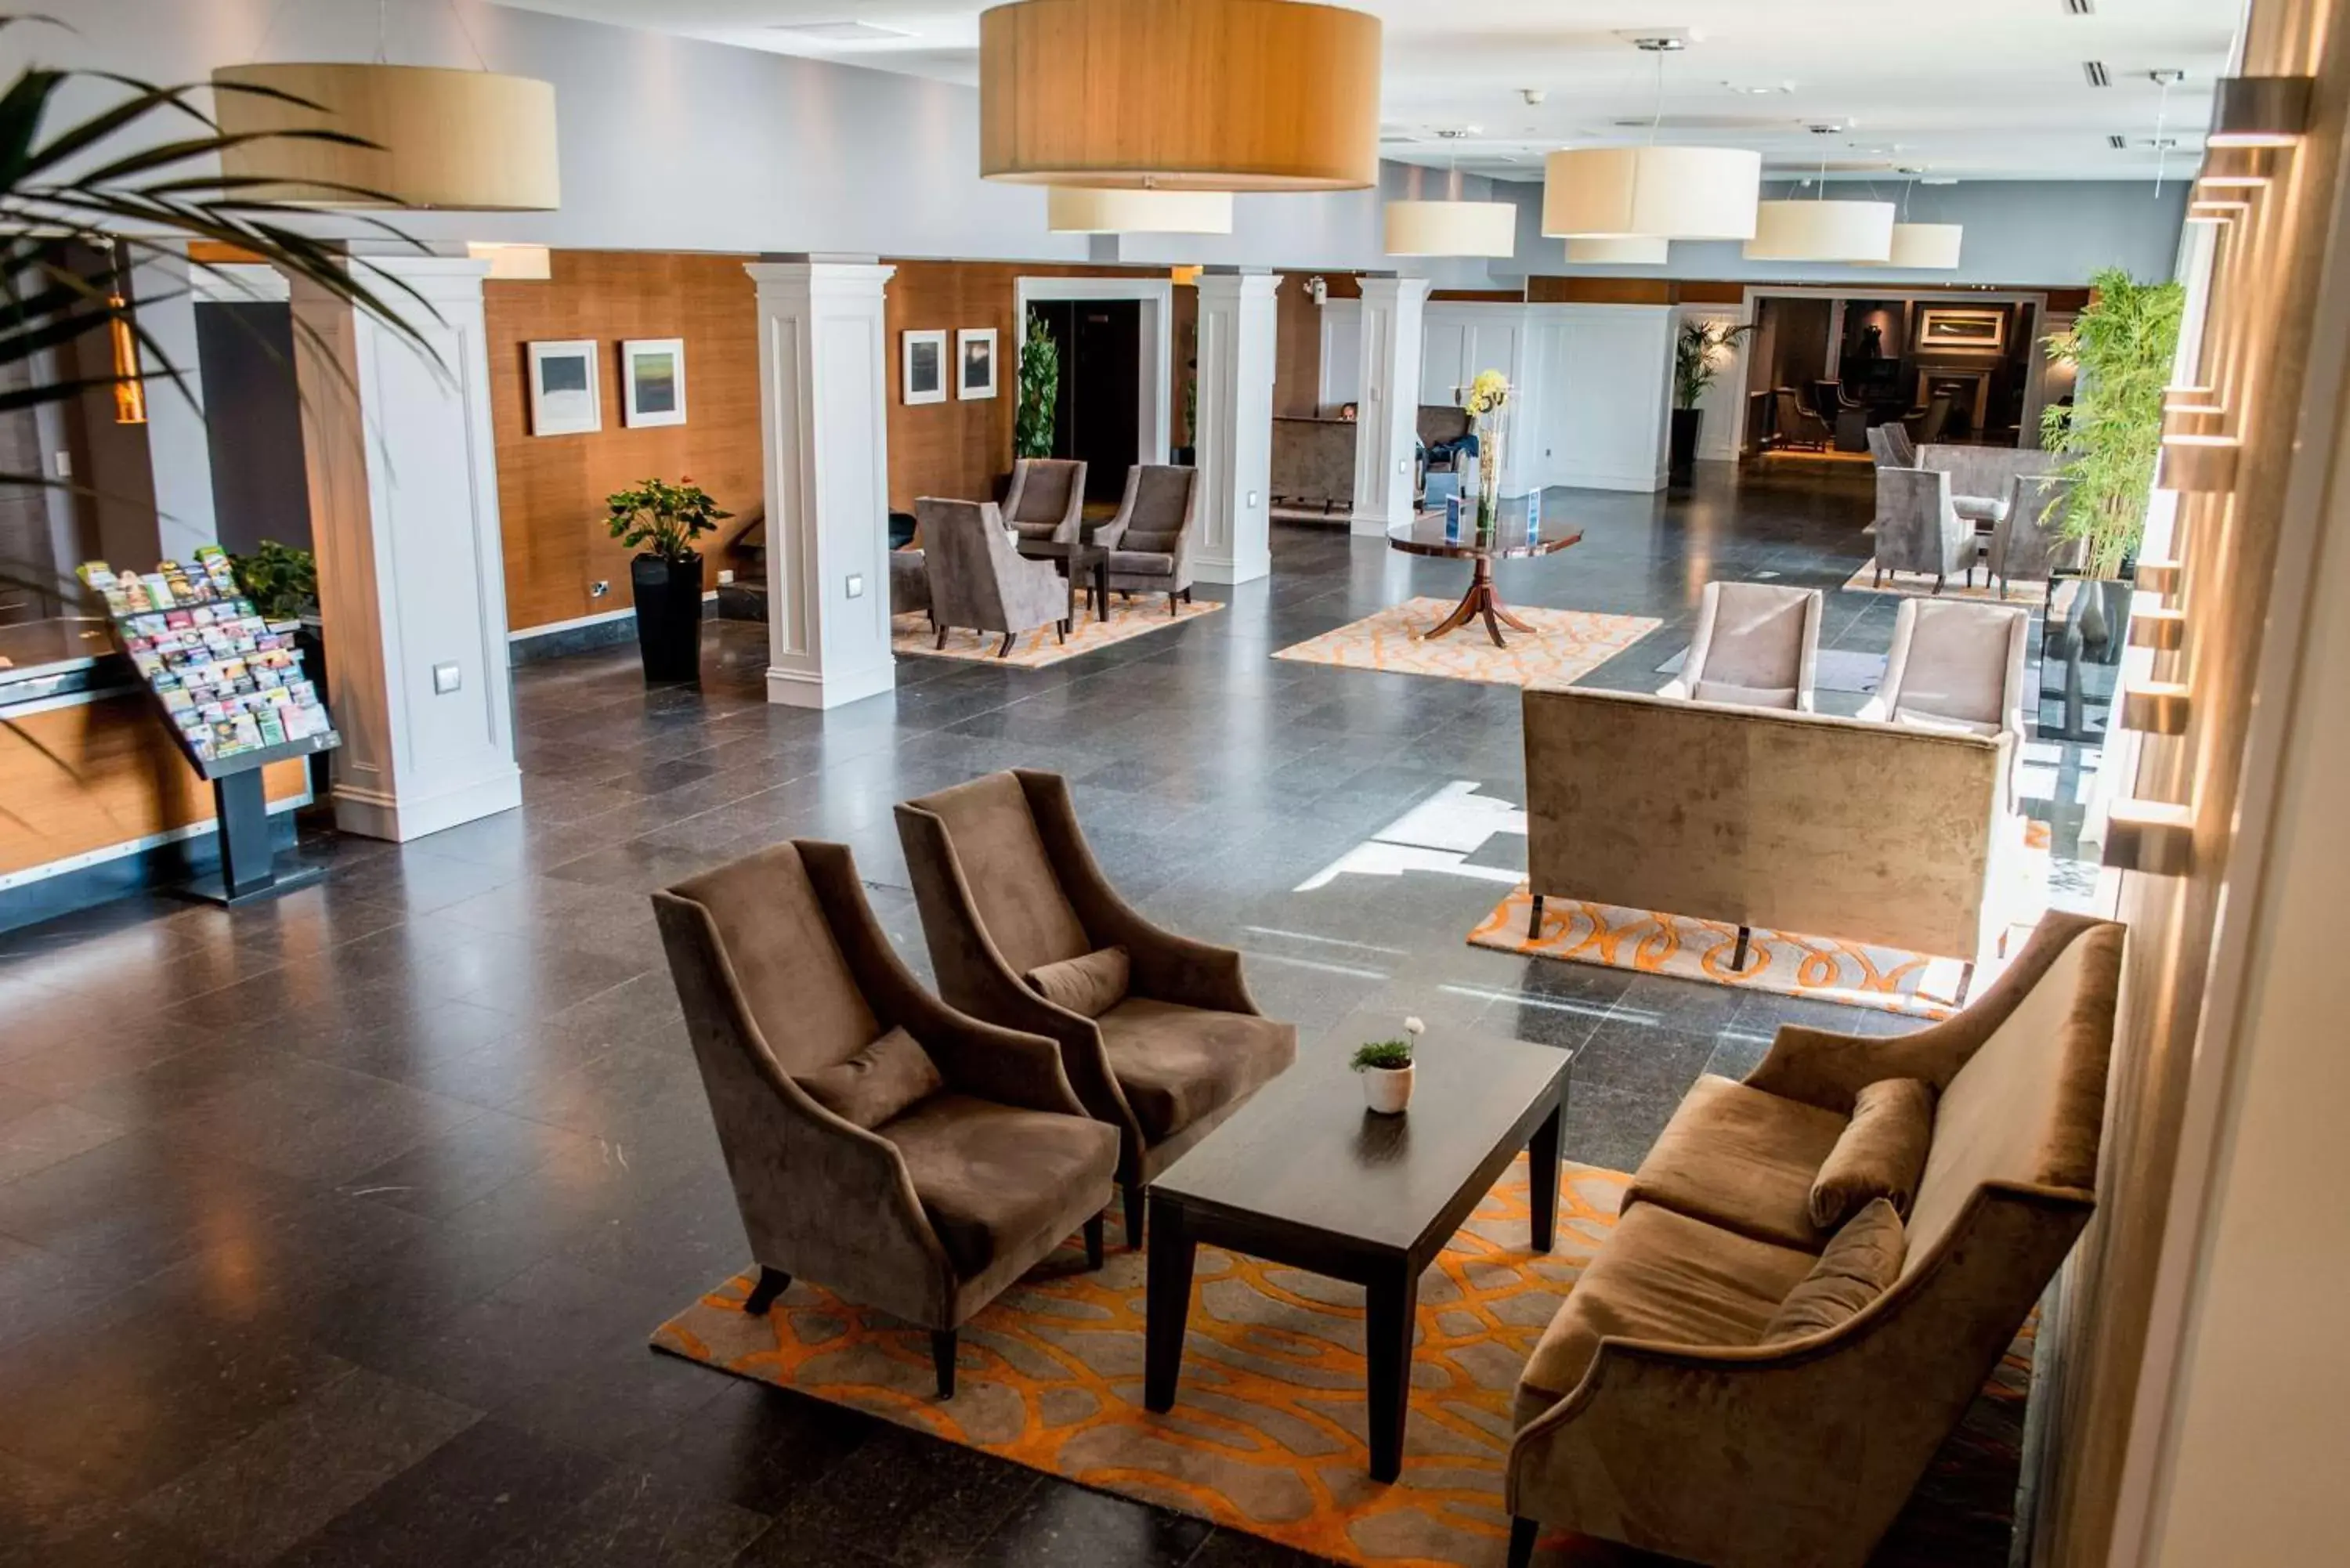 Lobby or reception, Lobby/Reception in Radisson BLU Hotel & Spa, Little Island Cork